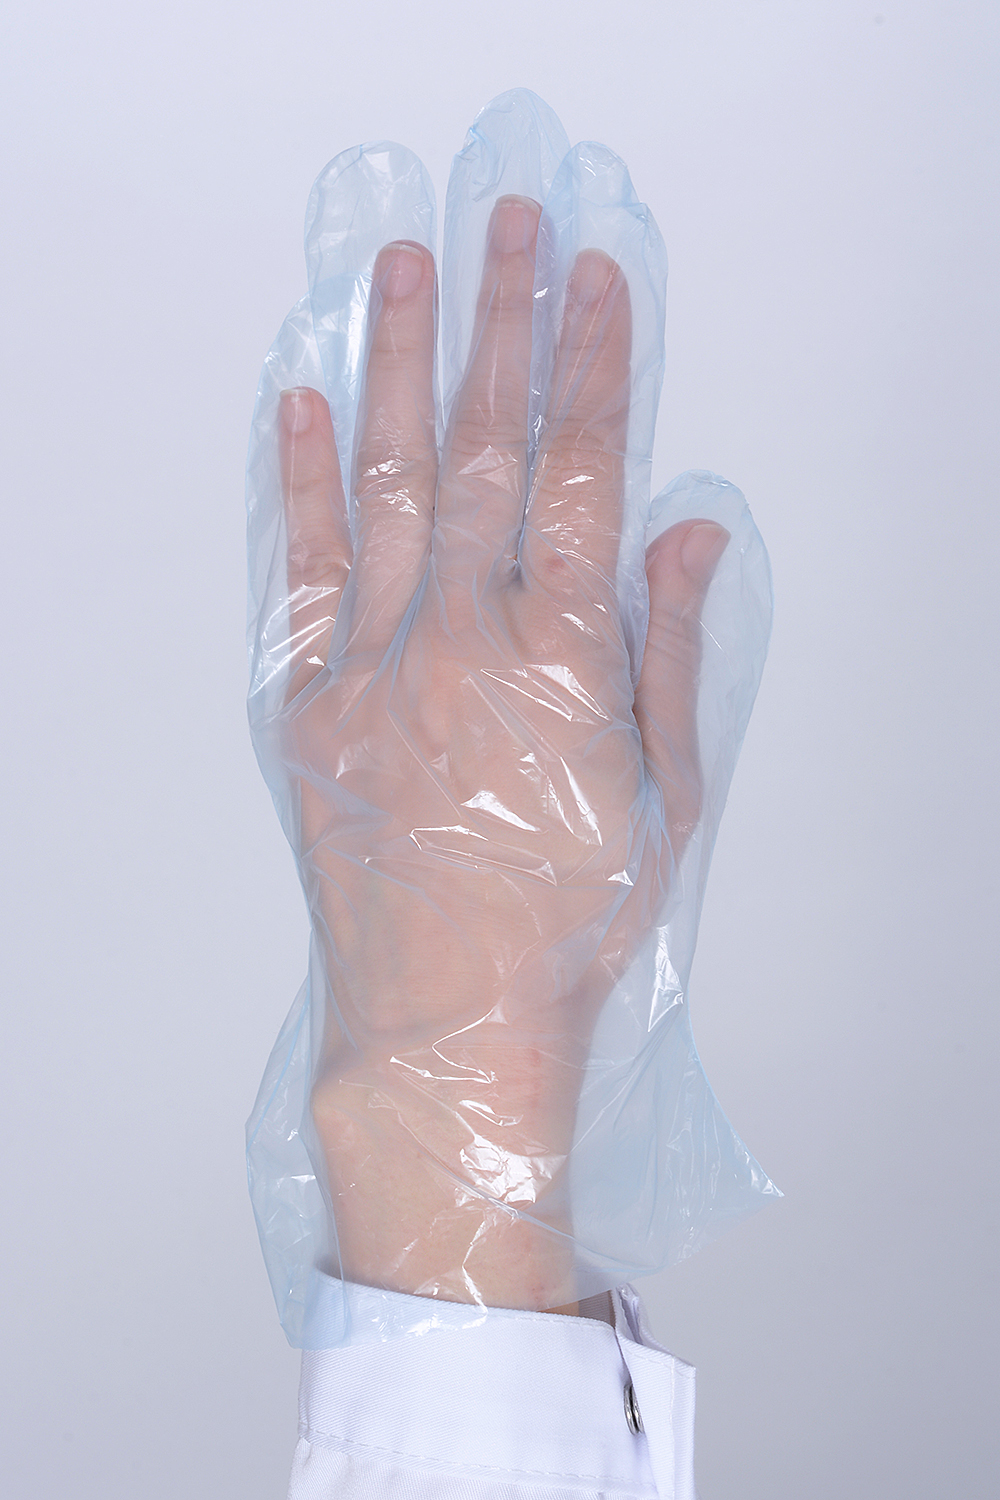 Перчатки полиэтиленовые одноразовые. Фото �2